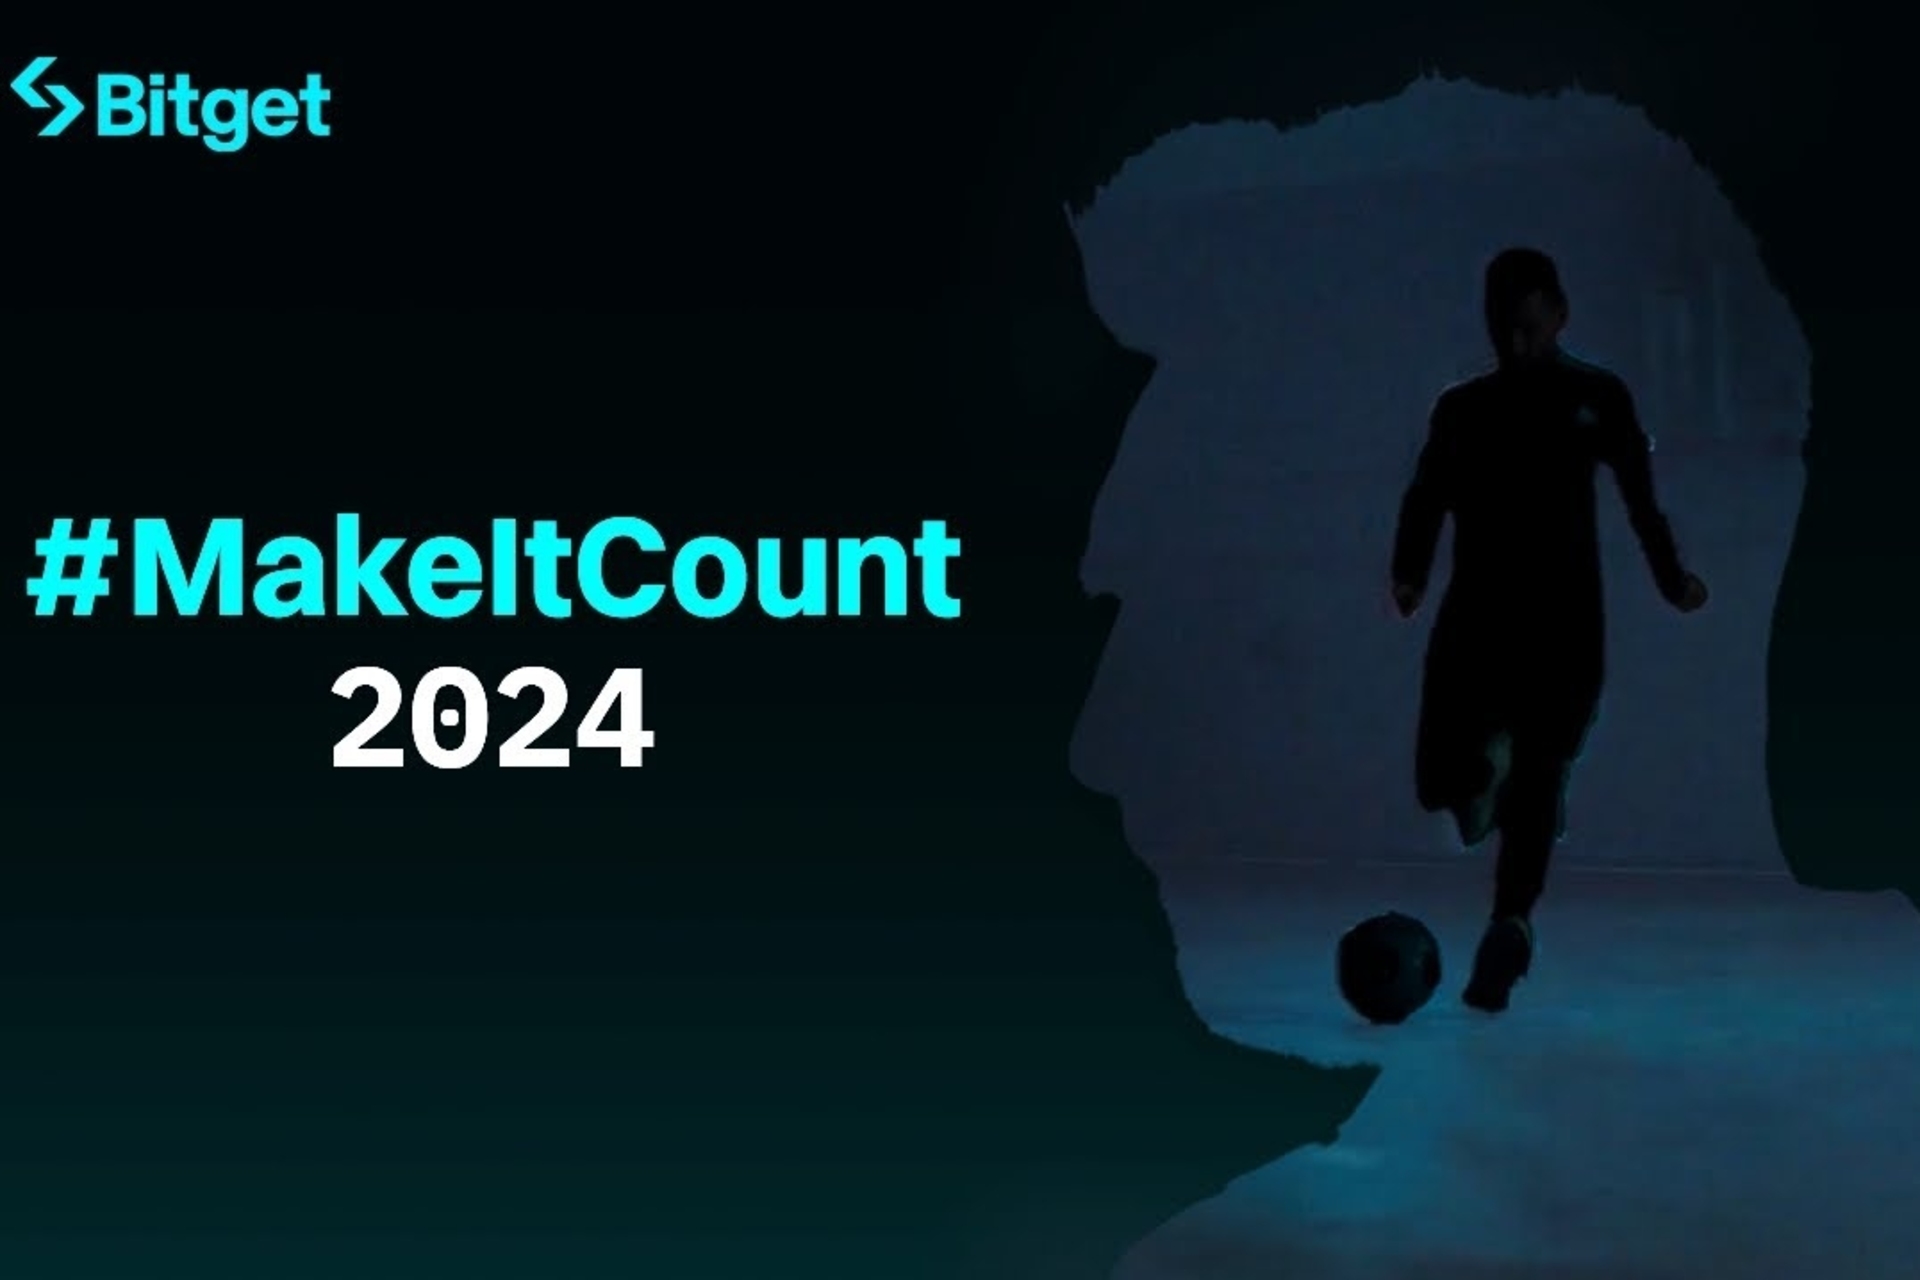 Ліянэль Месі: фільм #MakeItCount 2024 сімвалізуе фундаментальныя каштоўнасці, якія падзяляюць крыптабіржа Bitget і аргентынскі футбаліст